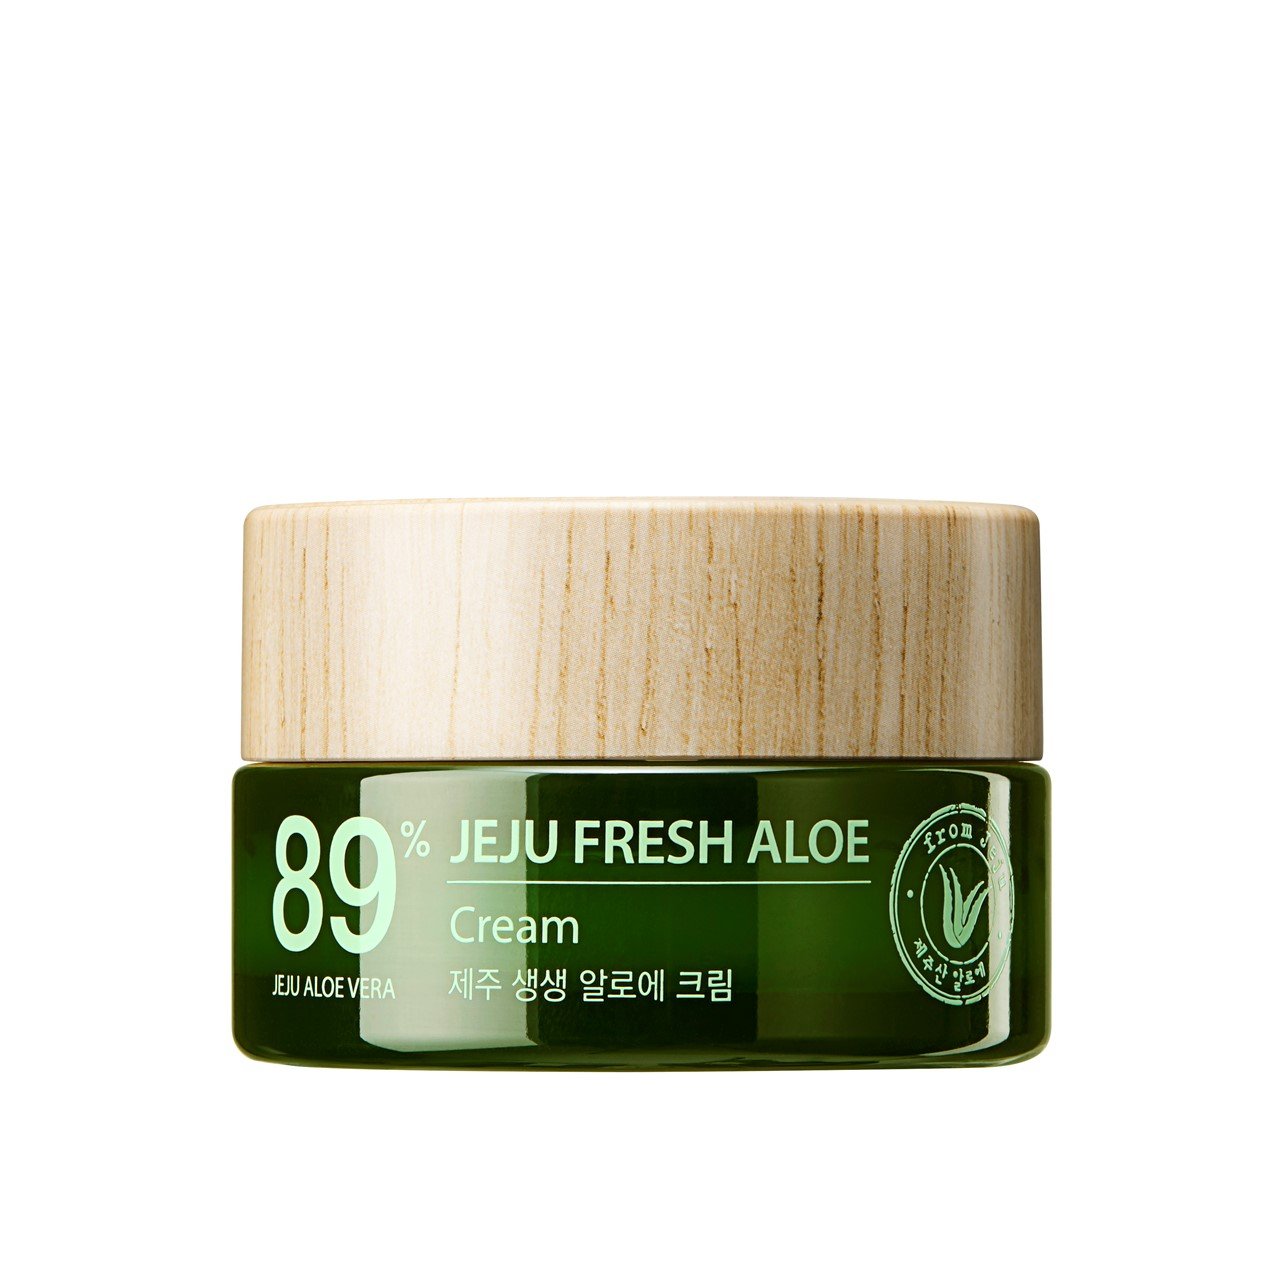 The Saem Jeju Fresh Aloe Cream 89% 50ml (1.69fl oz)